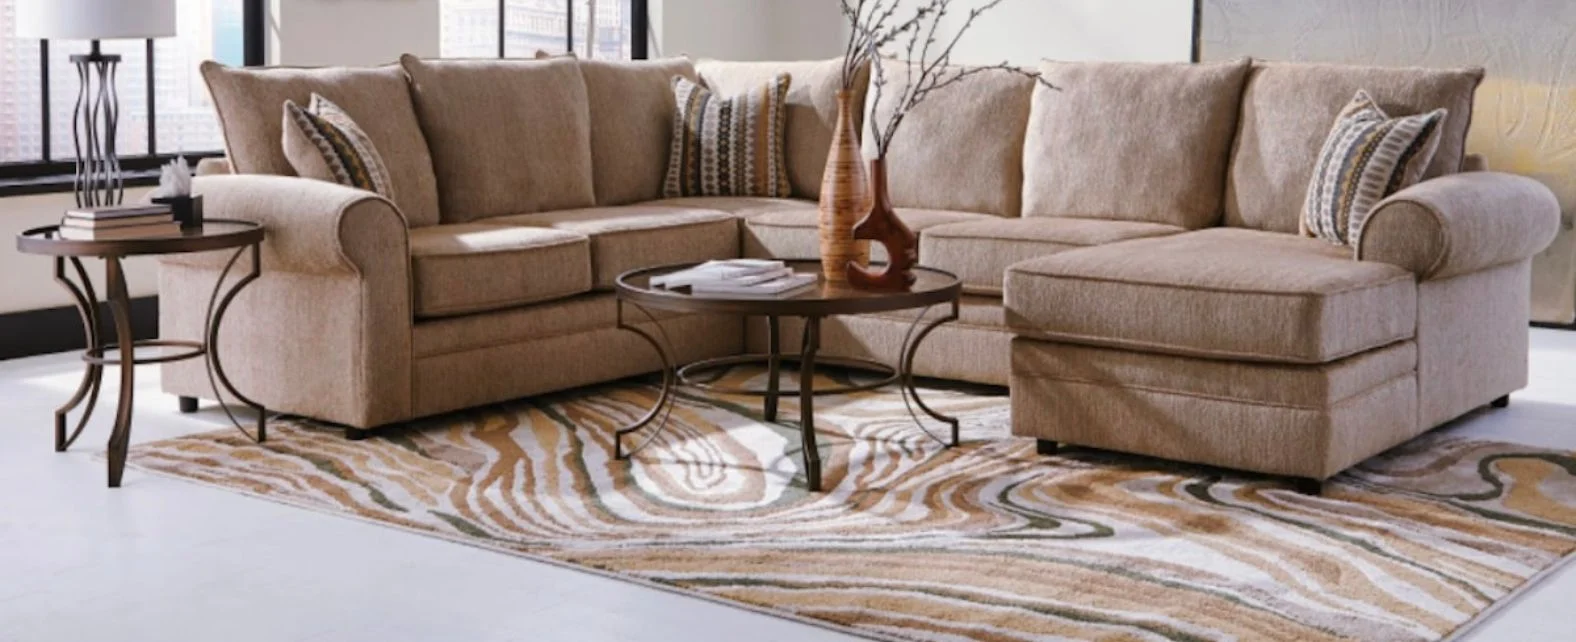 Tapis Design au style abstrait devant un canapé d’angle